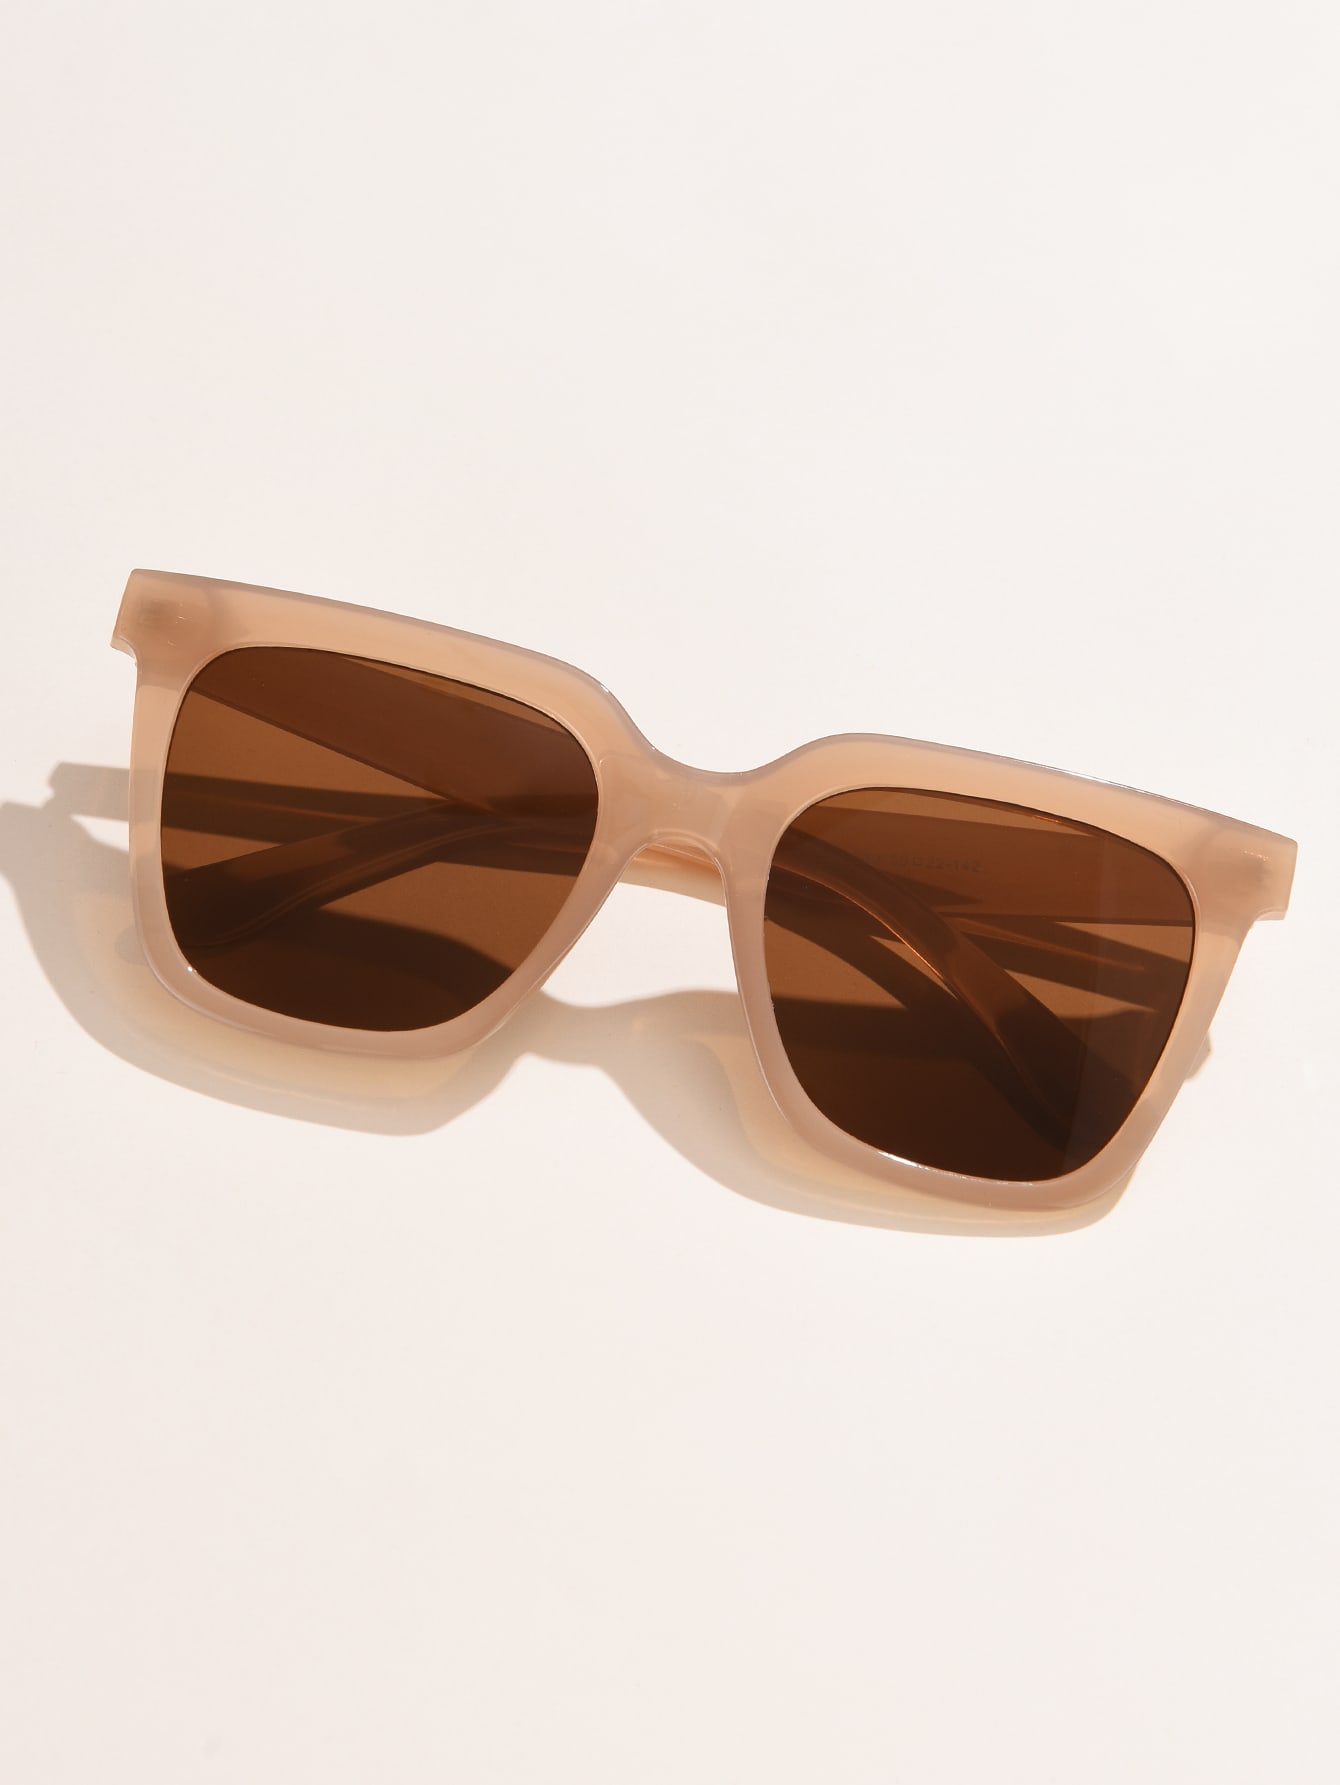 1 шт. Женские модные солнцезащитные очки в квадратной пластиковой оправе 1 шт квадратные стильные солнцезащитные очки для пляжа